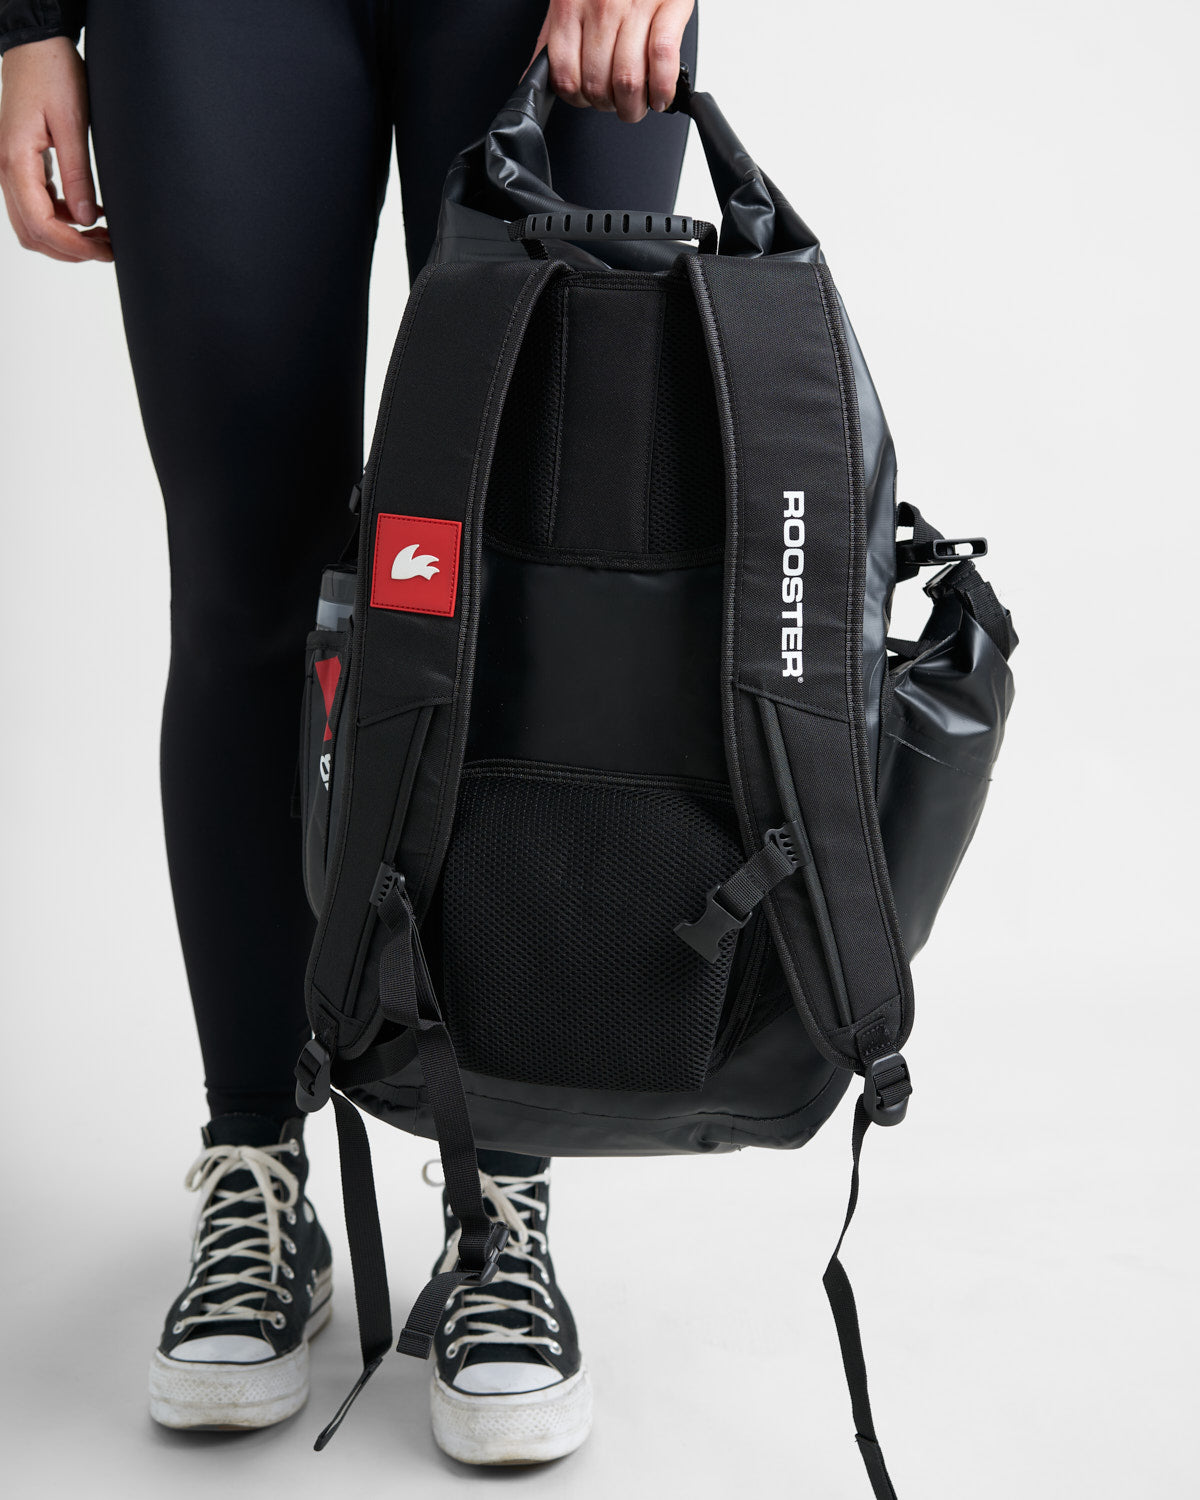 Rooster Waterproof Backpack - 30L - Black